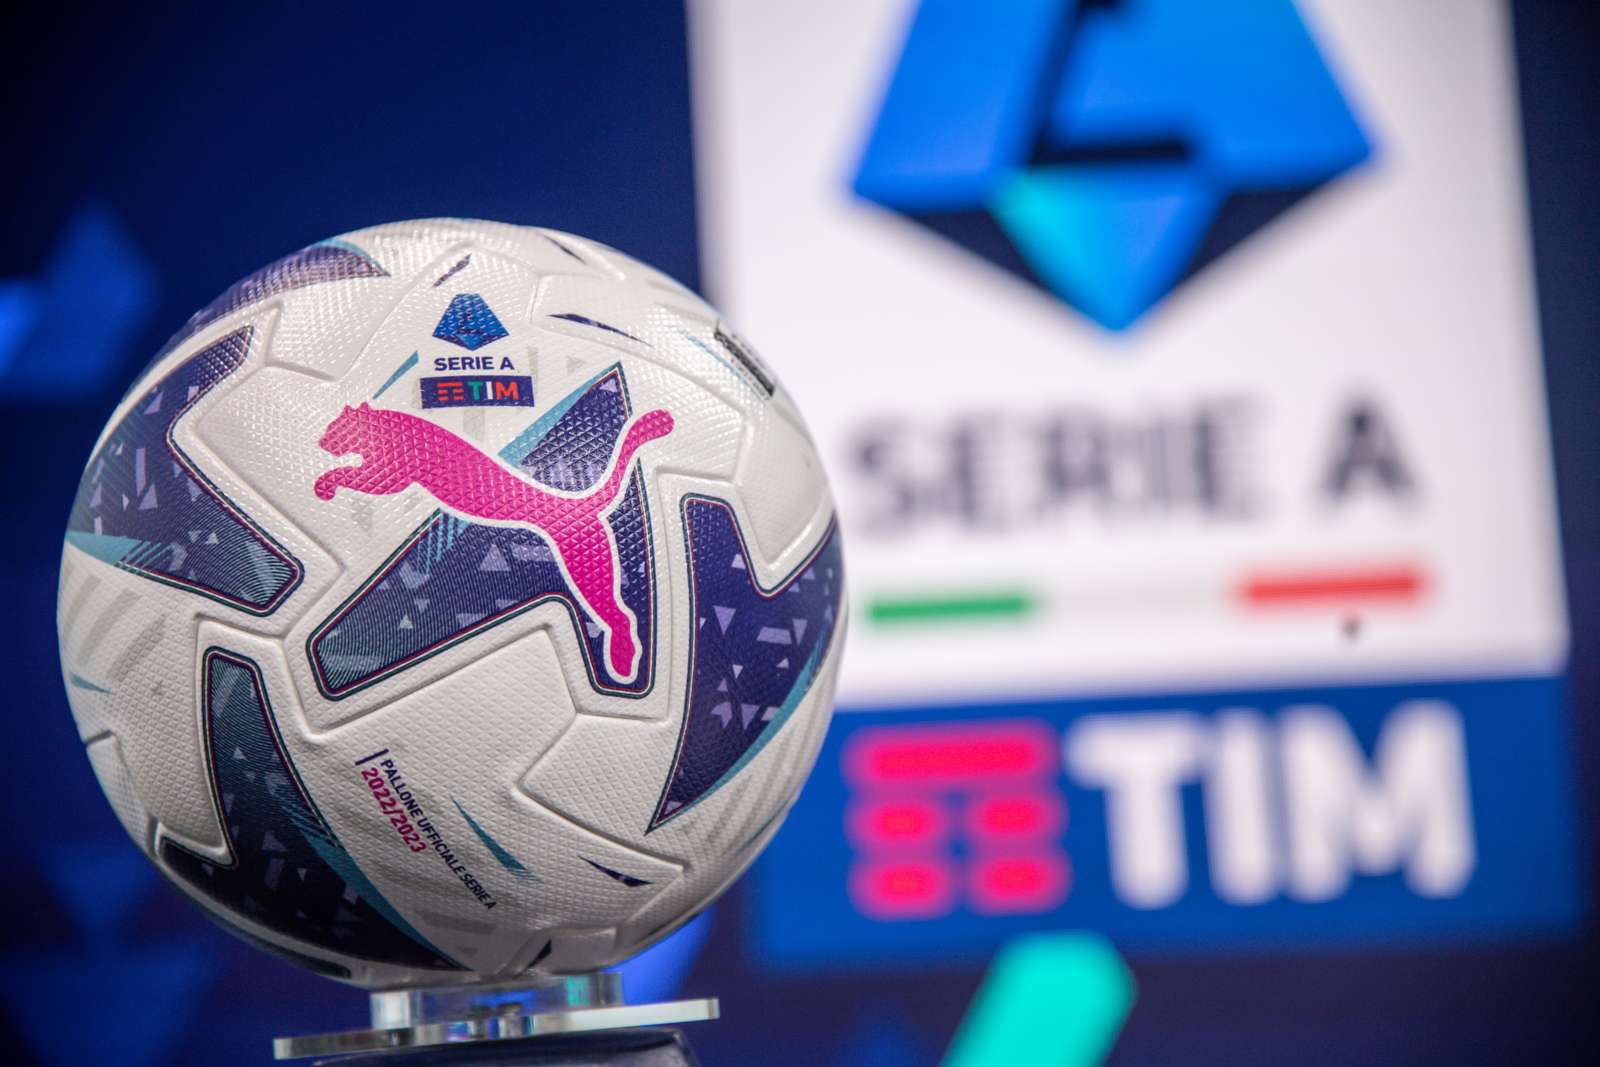 Lega Serie A con Adplay crea piattaforma dedicata agli highlights del campionato 